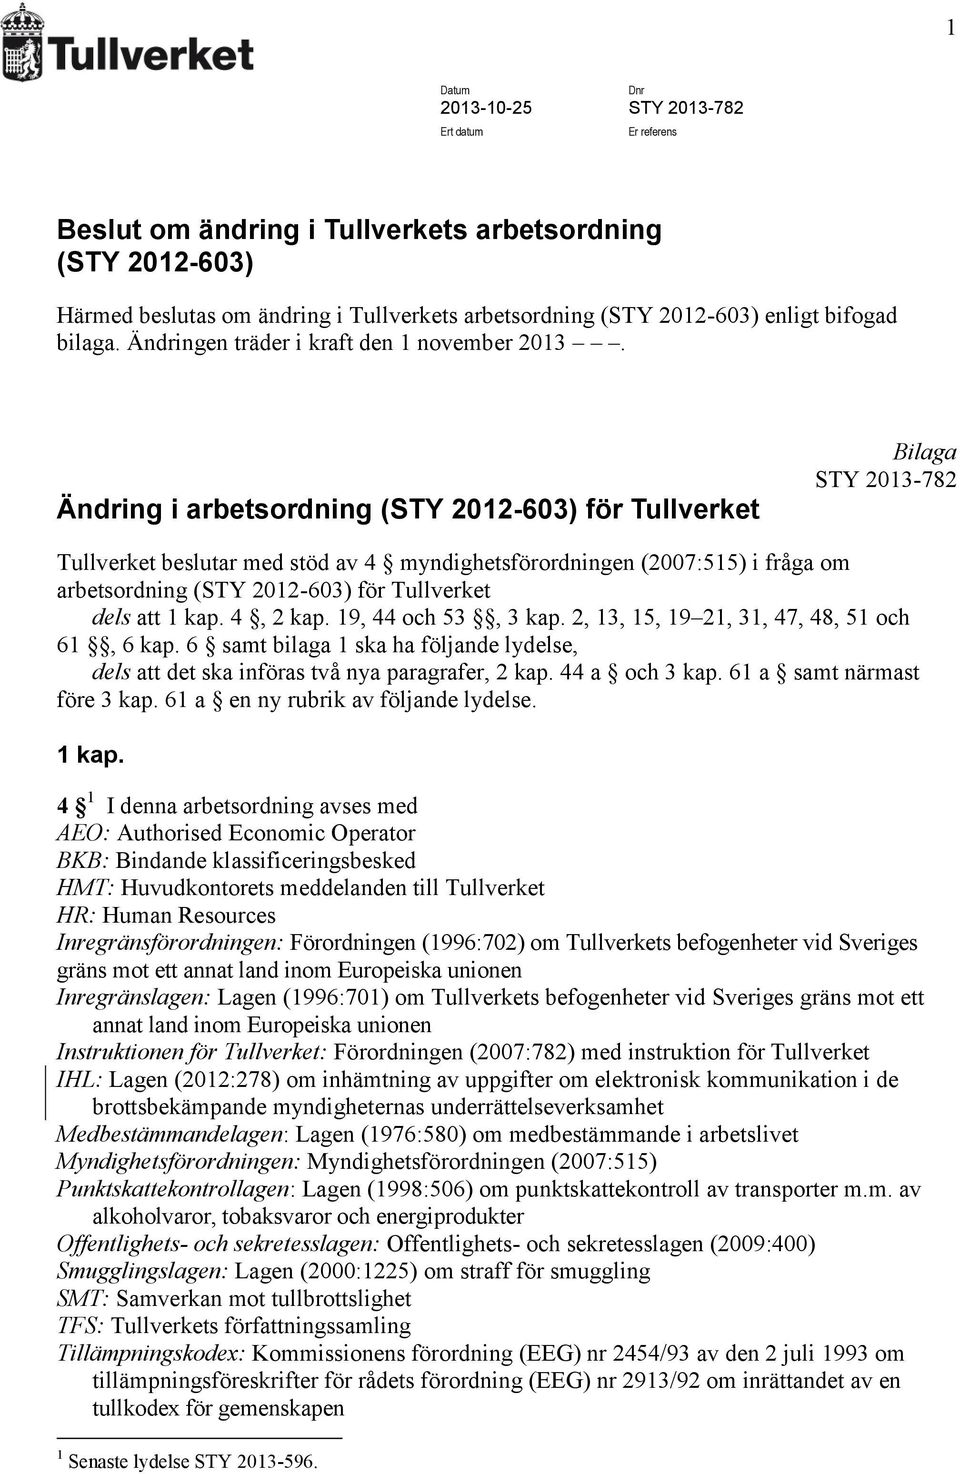 Ändring i arbetsordning (STY 2012-603) för Tullverket Bilaga STY 2013-782 Tullverket beslutar med stöd av 4 myndighetsförordningen (2007:515) i fråga om arbetsordning (STY 2012-603) för Tullverket